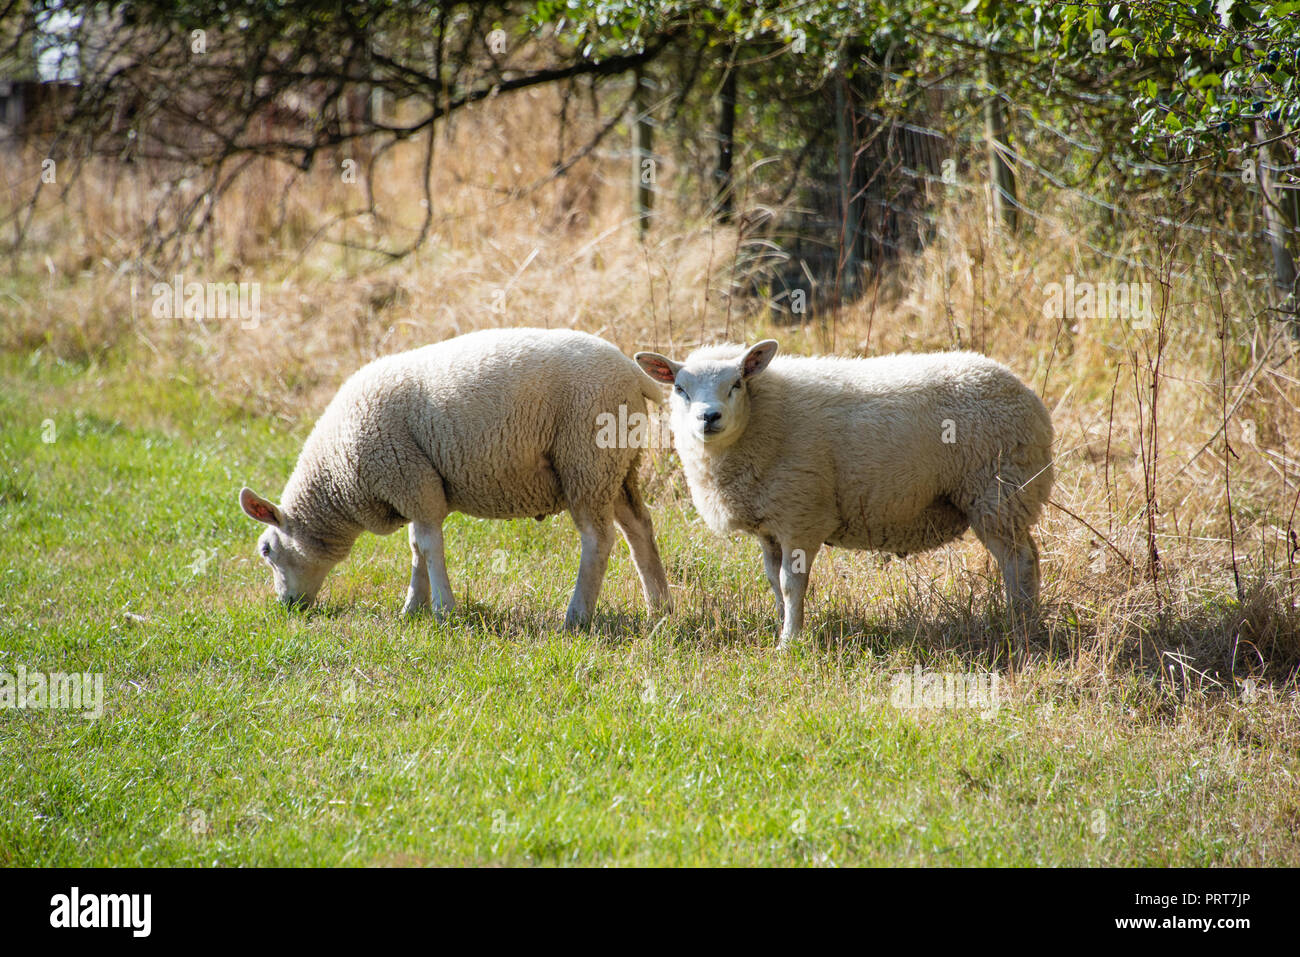 Dos choro listo para la esquila de ovejas, uno comer mucho pasto verde y los demás interesados en el fotógrafo Foto de stock